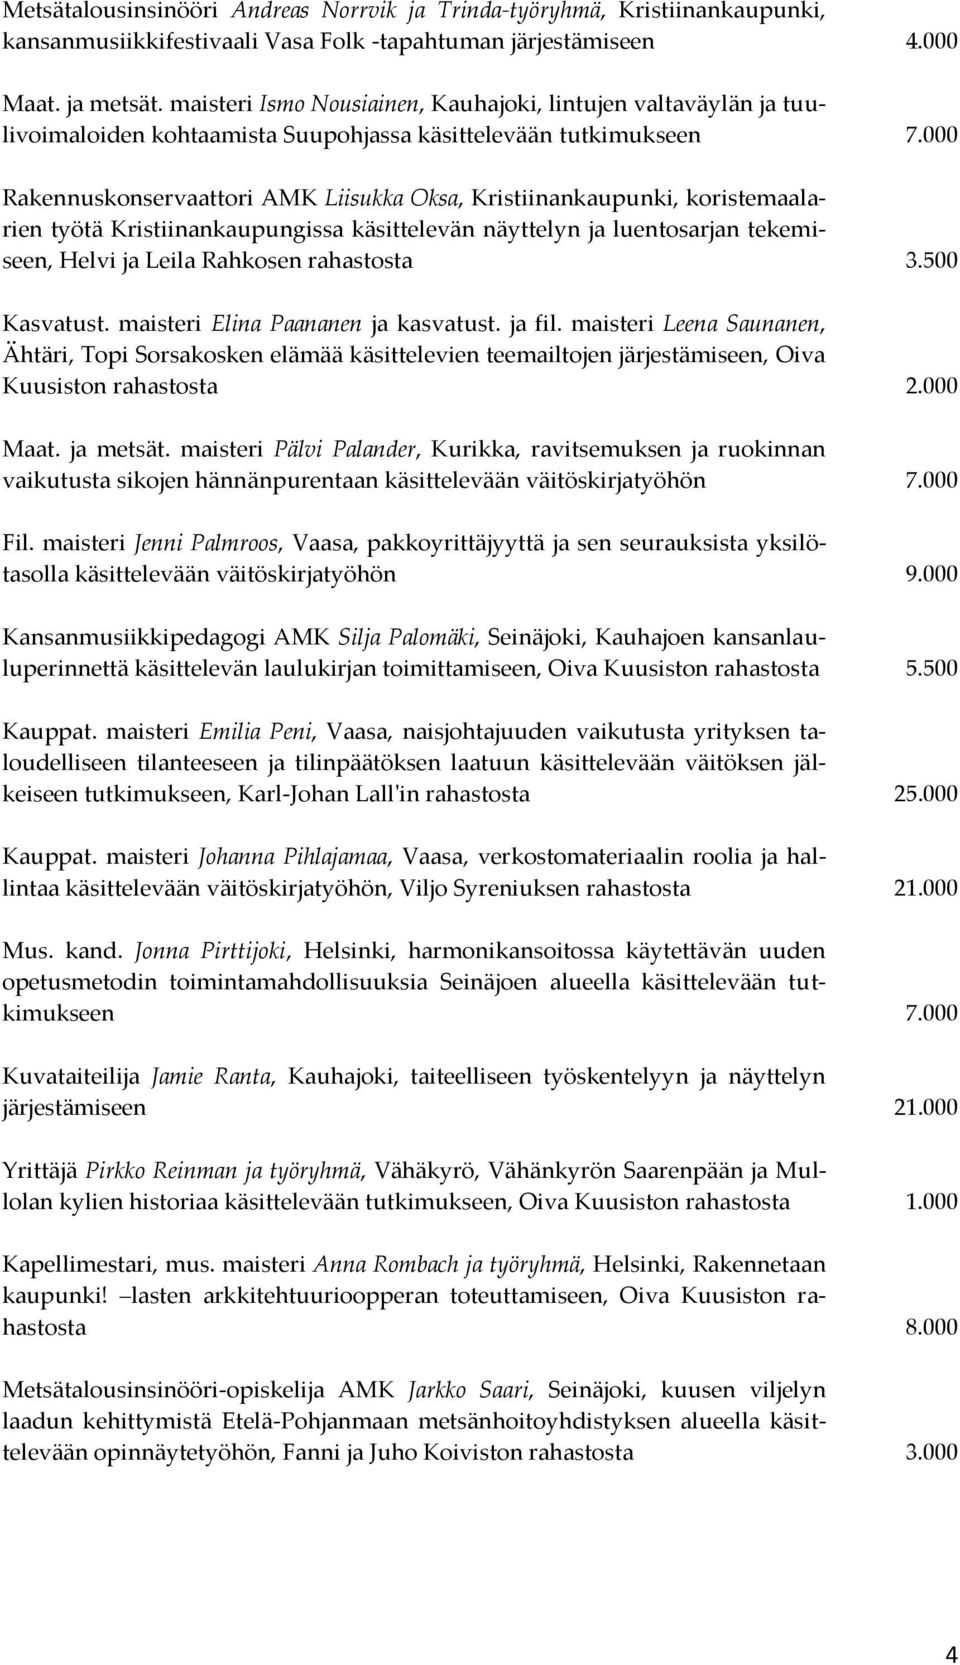 000 Rakennuskonservaattori AMK Liisukka Oksa, Kristiinankaupunki, koristemaalarien työtä Kristiinankaupungissa käsittelevän näyttelyn ja luentosarjan tekemiseen, Helvi ja Leila Rahkosen rahastosta 3.